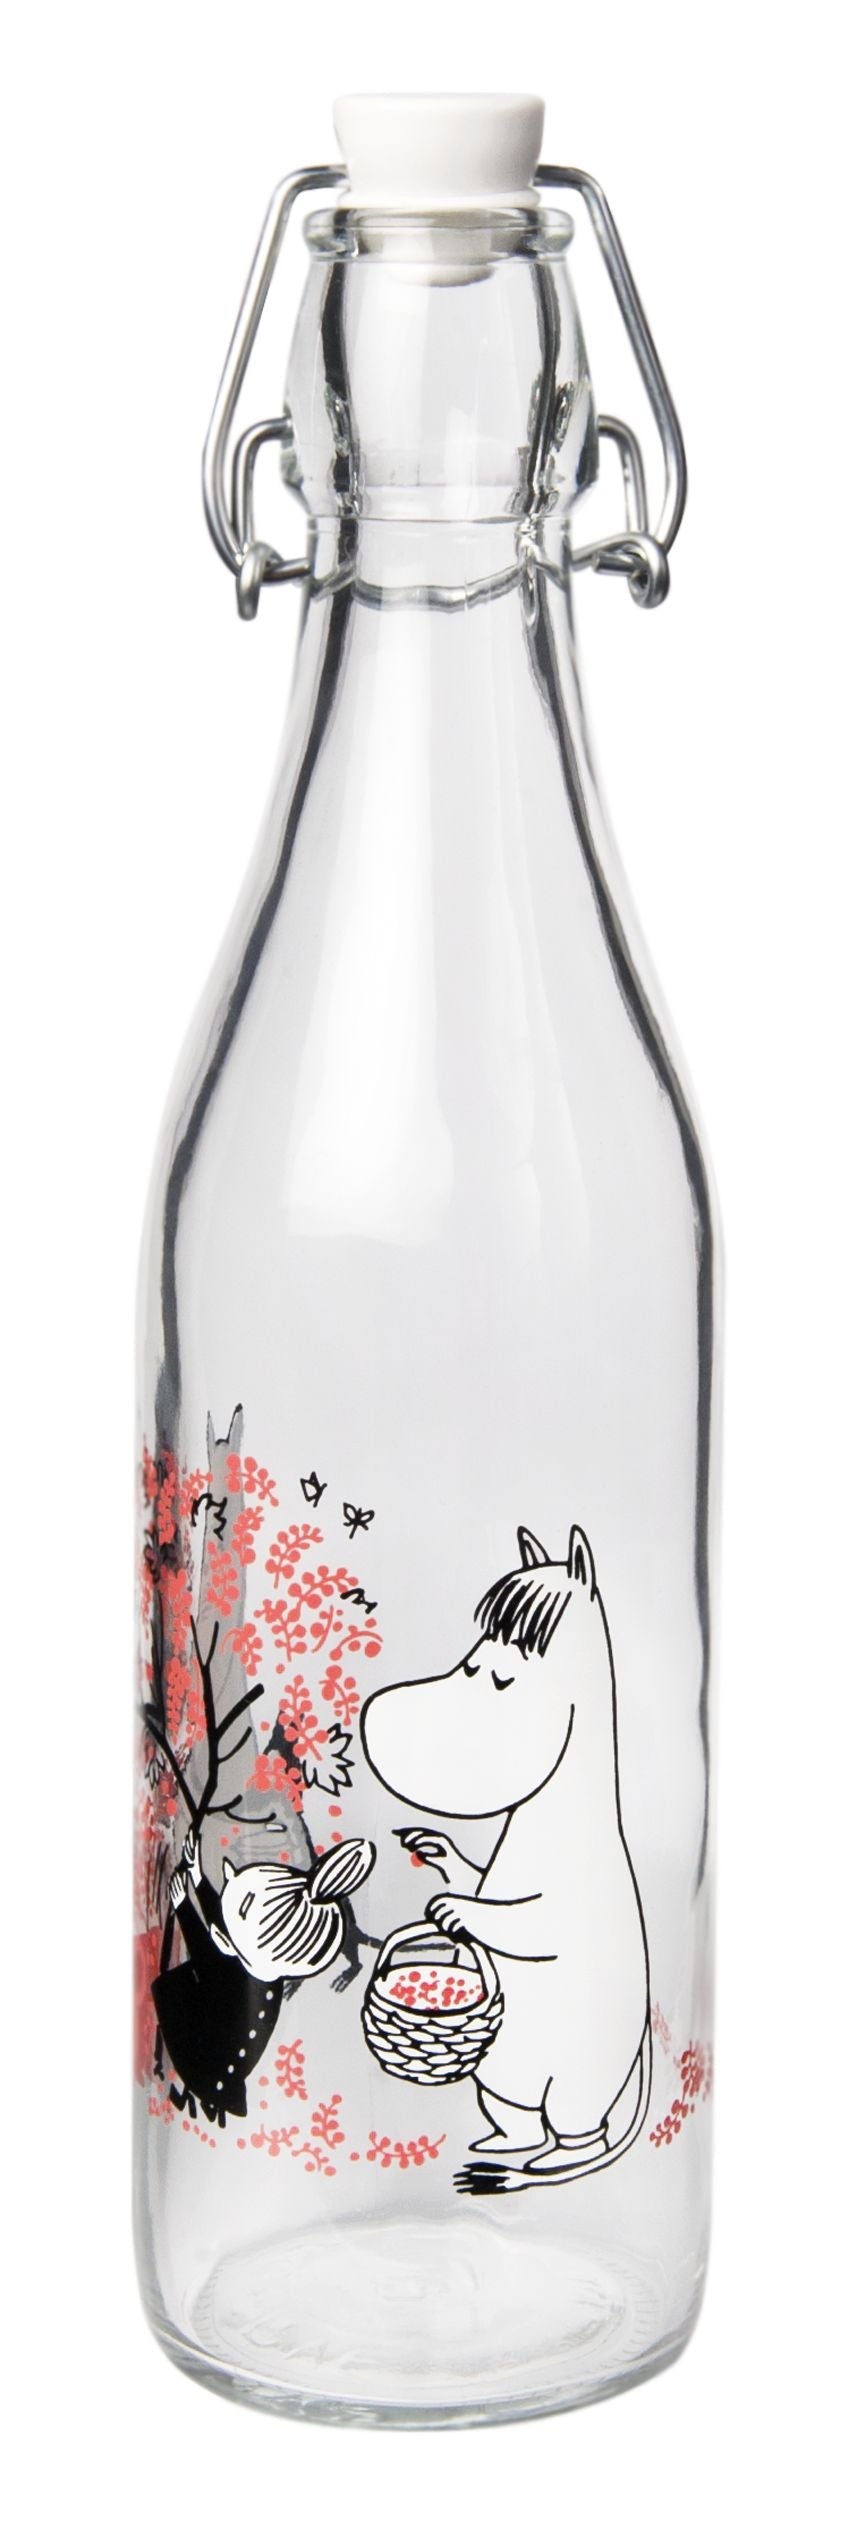 Bottiglia di vetro Muurla Moomin, bacche